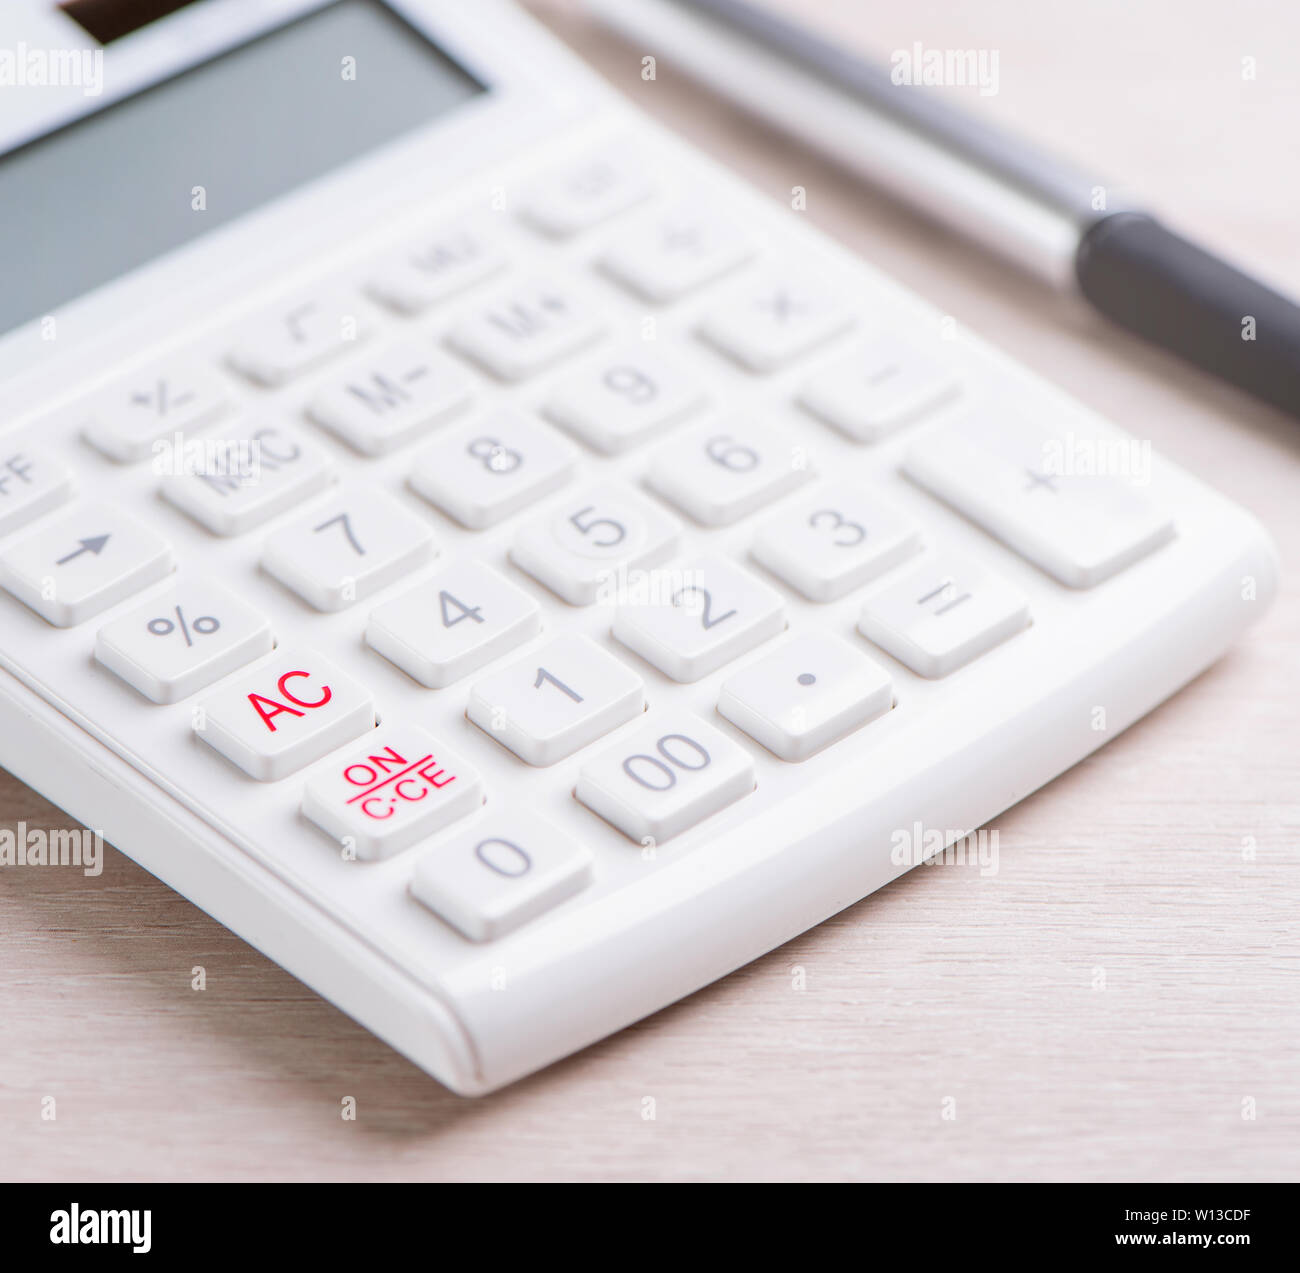 Weiß Taschenrechner und Kugelschreiber auf helle Holz- Tabelle, Analysen  und Statistiken der finanzielle Gewinn, ein Anlagerisiko Konzept, kopieren  Sie Raum, Makro, Nahaufnahme Stockfotografie - Alamy